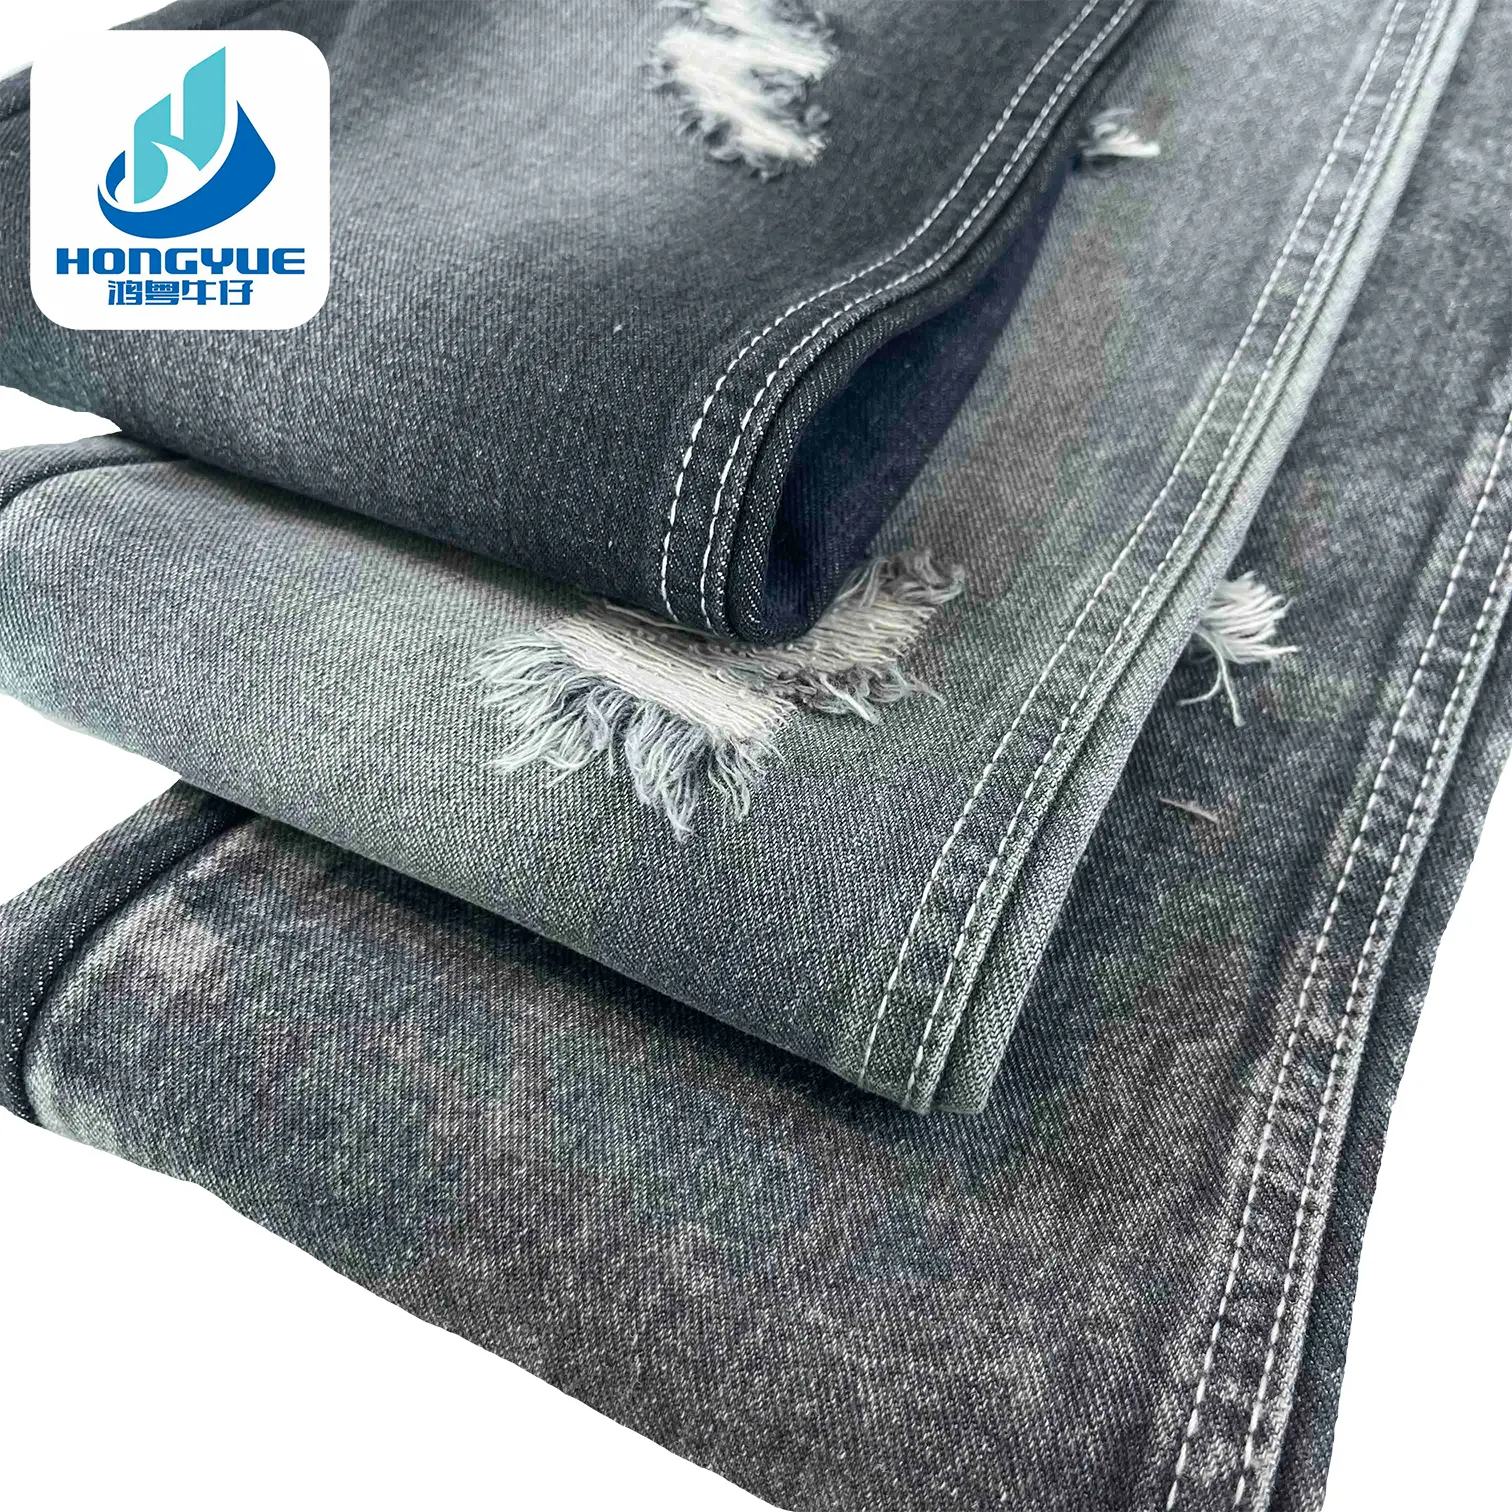 OE 3/1 левая твил мягкая жесткая джинсовая ткань 10,5 унций, приятные на ощупь рулоны темно-серой джинсовой ткани